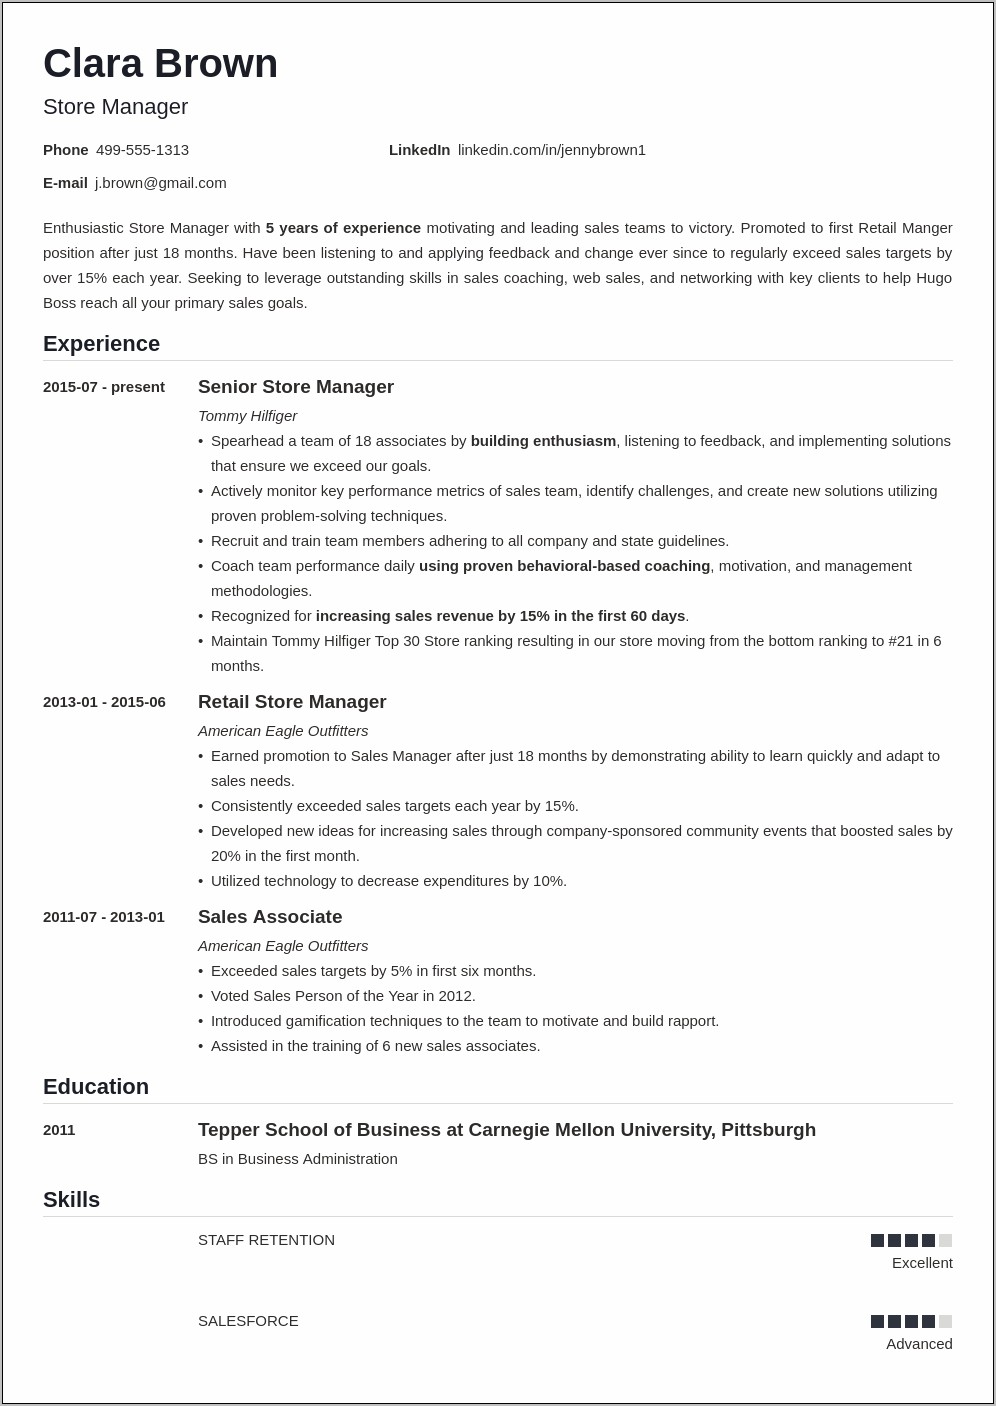 Sample Resume For Retail Jobs In Australia